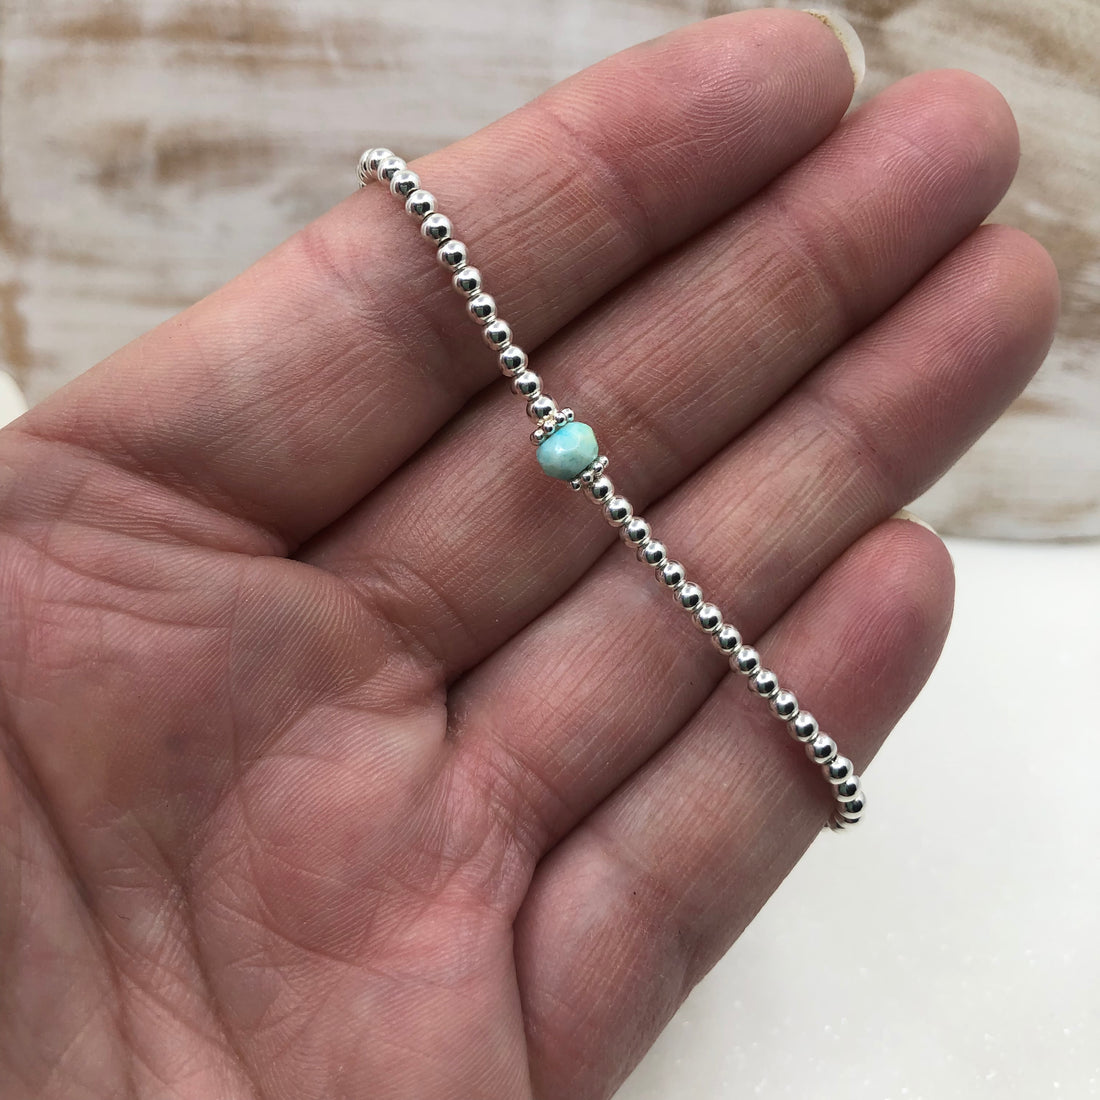 Opal sterling silver adjustable beaded bracelet | October birthstone